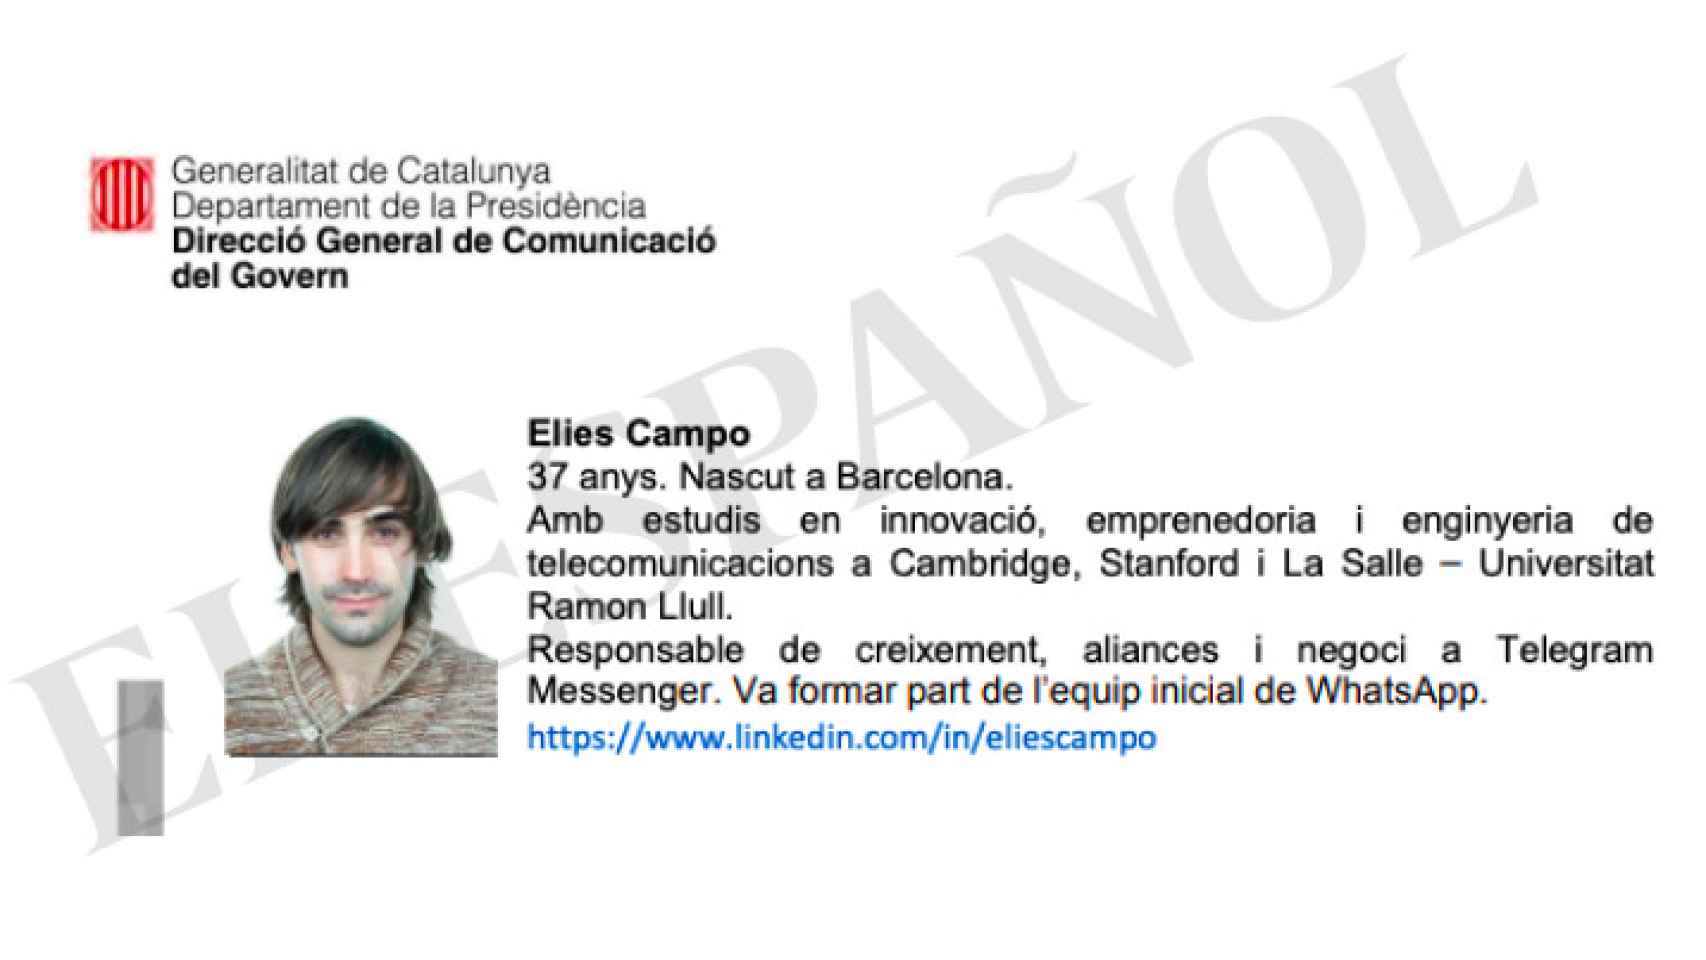 El informático, en el documento de la Generalitat con el que le presentaban como colaborador.